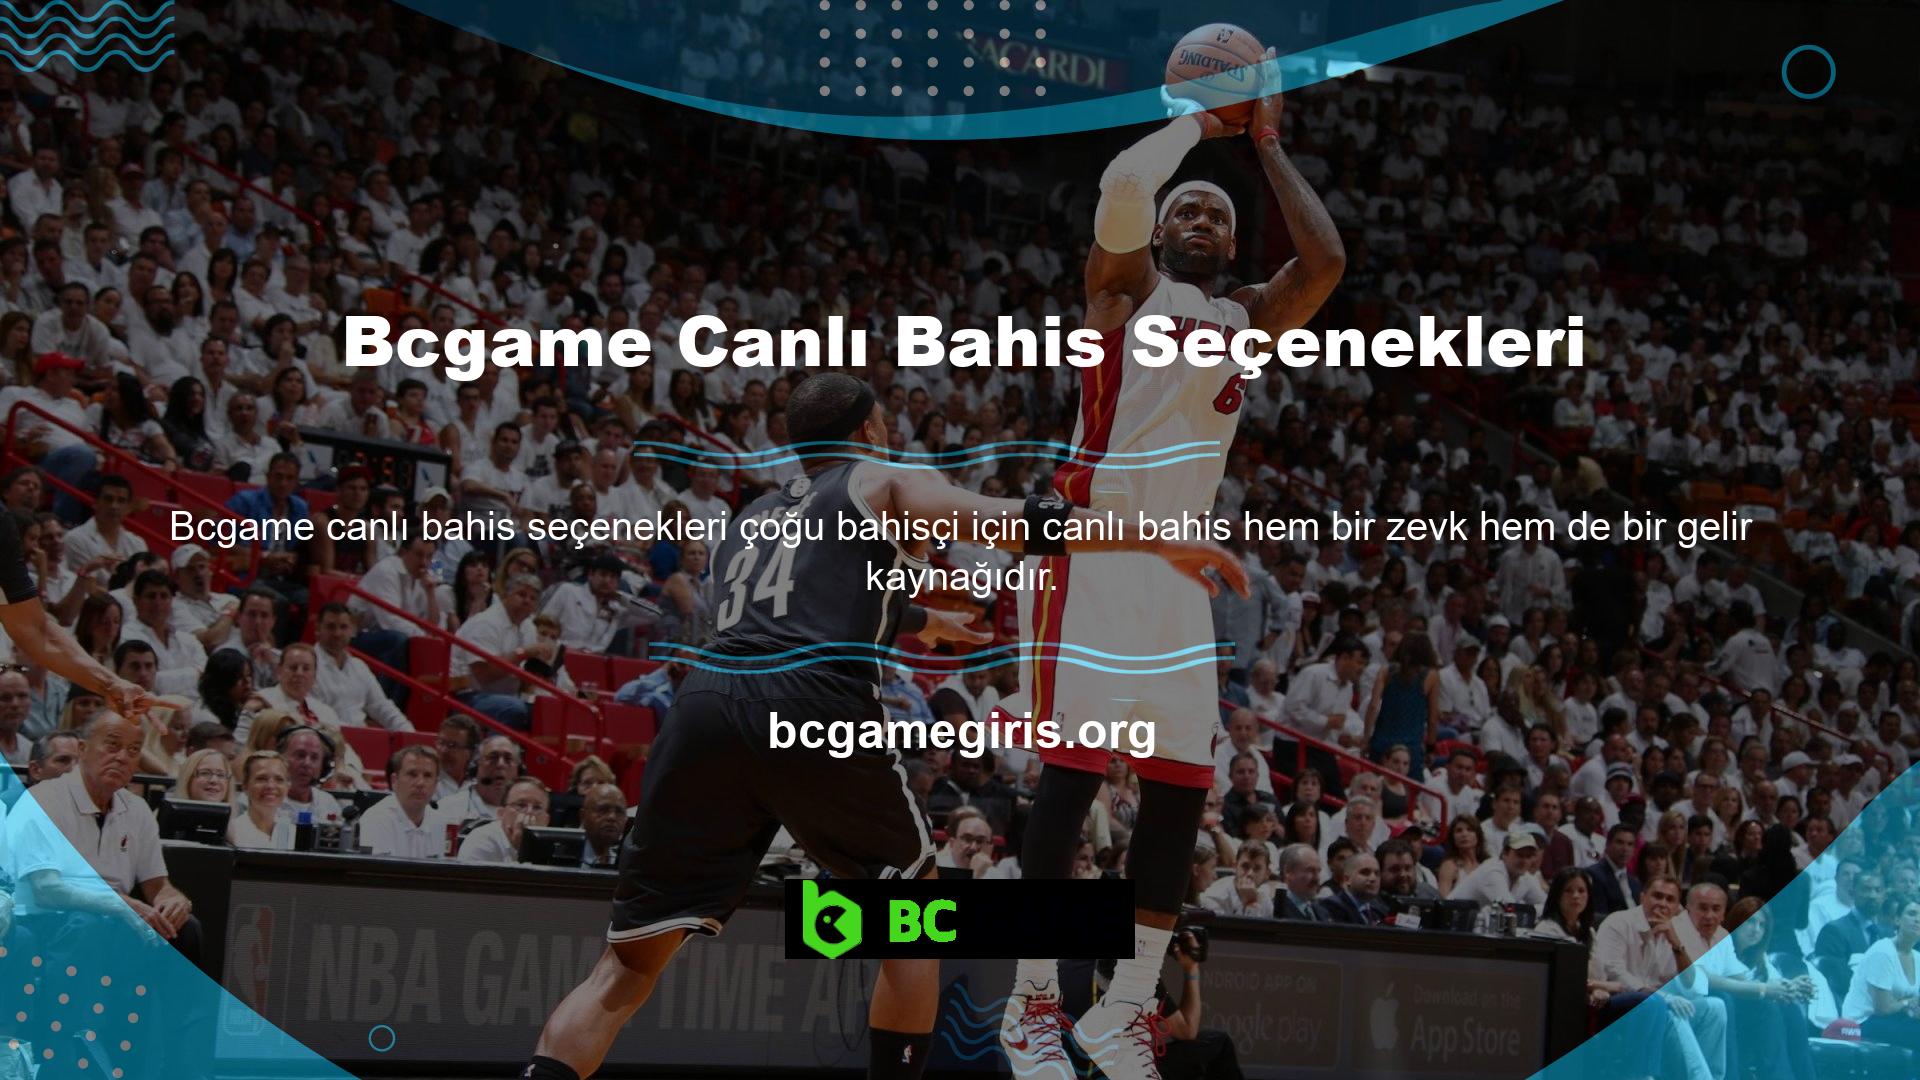 Canlı bahis en popüler bahis alanlarından biridir ve Bcgame web sitesi çeşitli seçenekler sunmaktadır